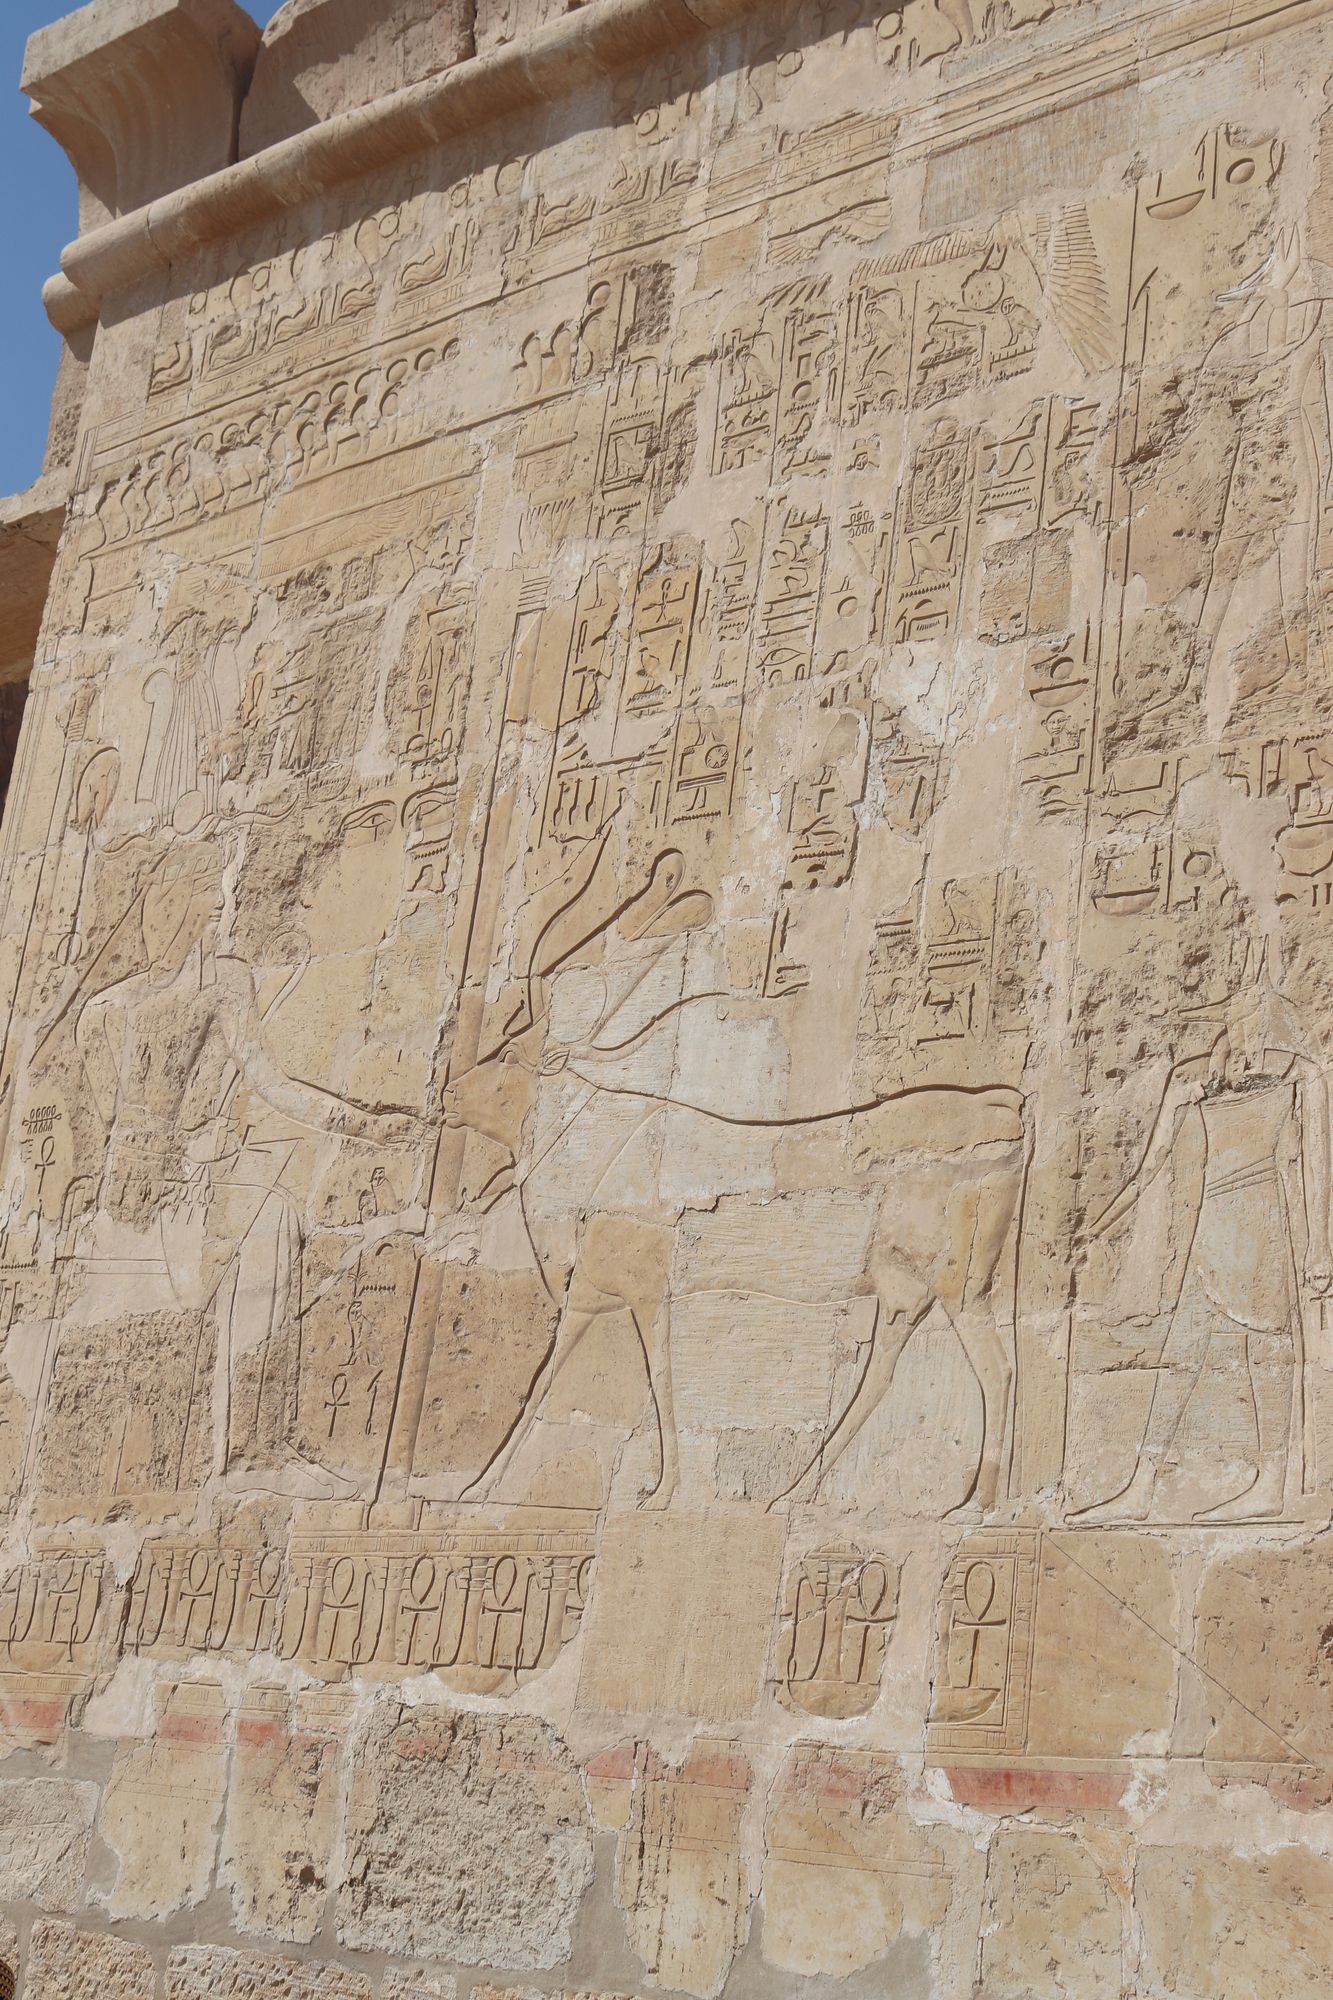 Antiguo Egipto - Templo de Hatshepsut en Deir el-Bahari - Egiptología